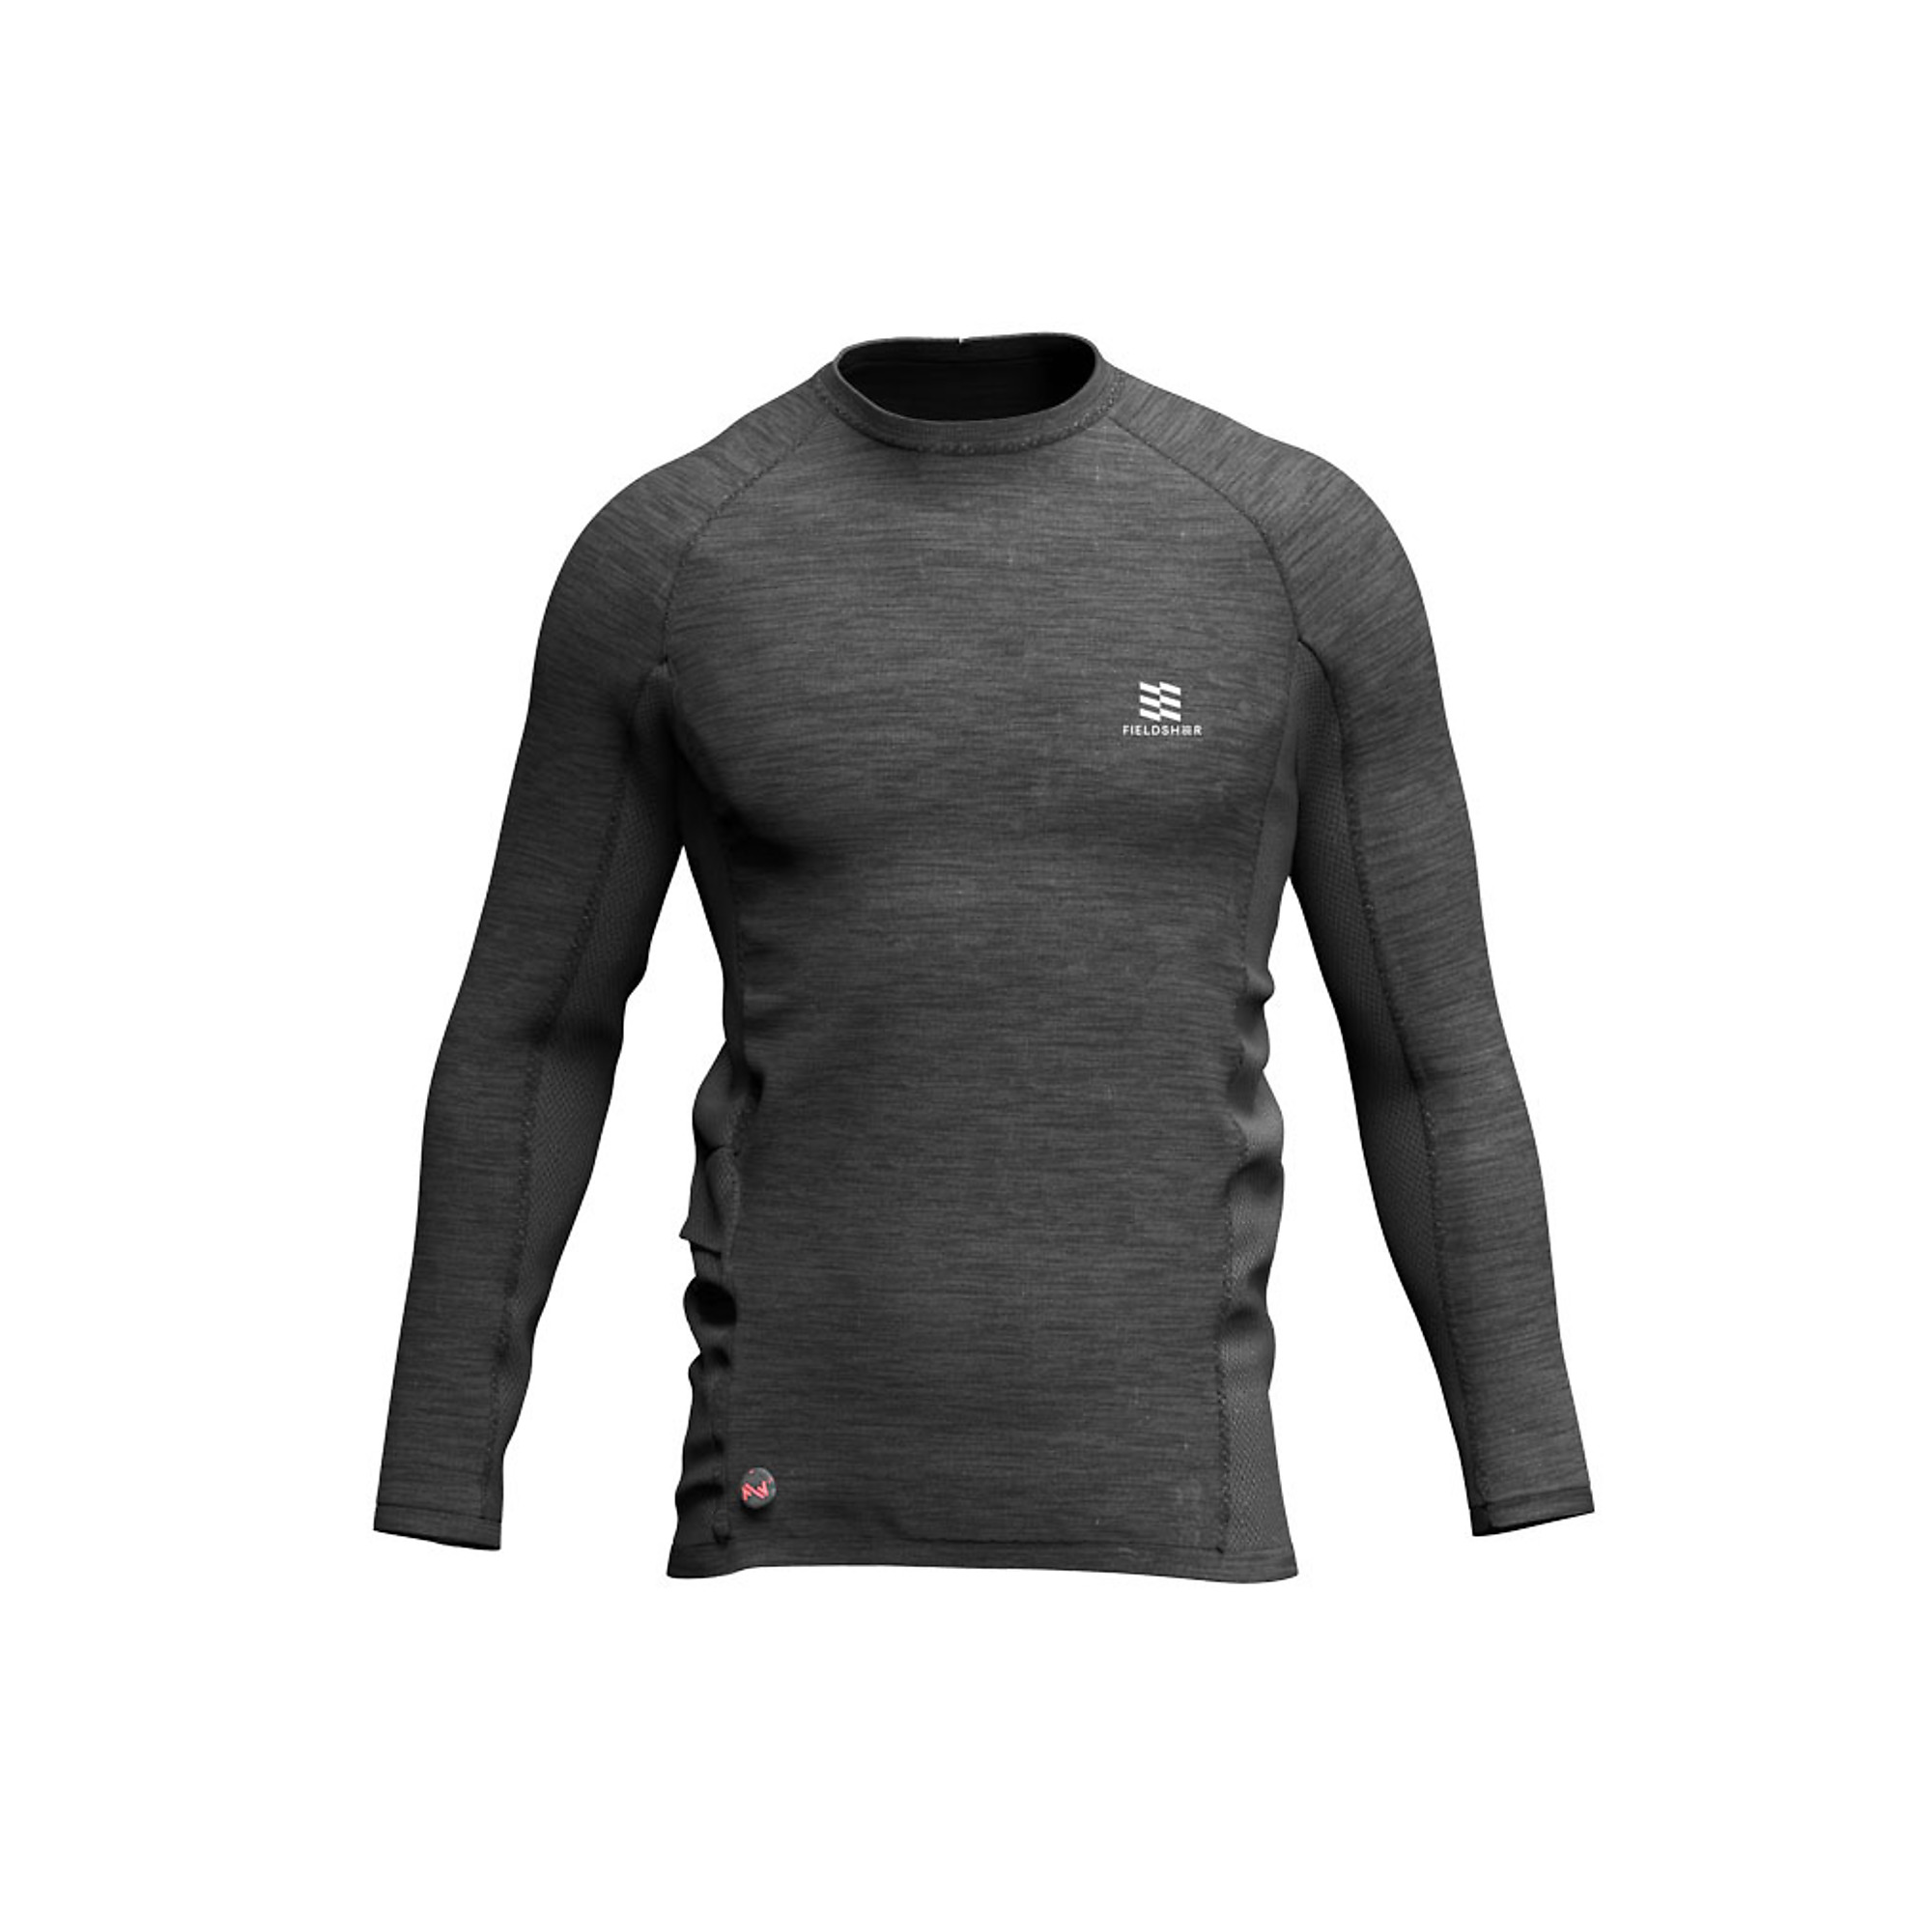 Fieldsheer, Men's Primer Heated Baselayer Shirt, Size L, Color Black, Model MWMT11010420